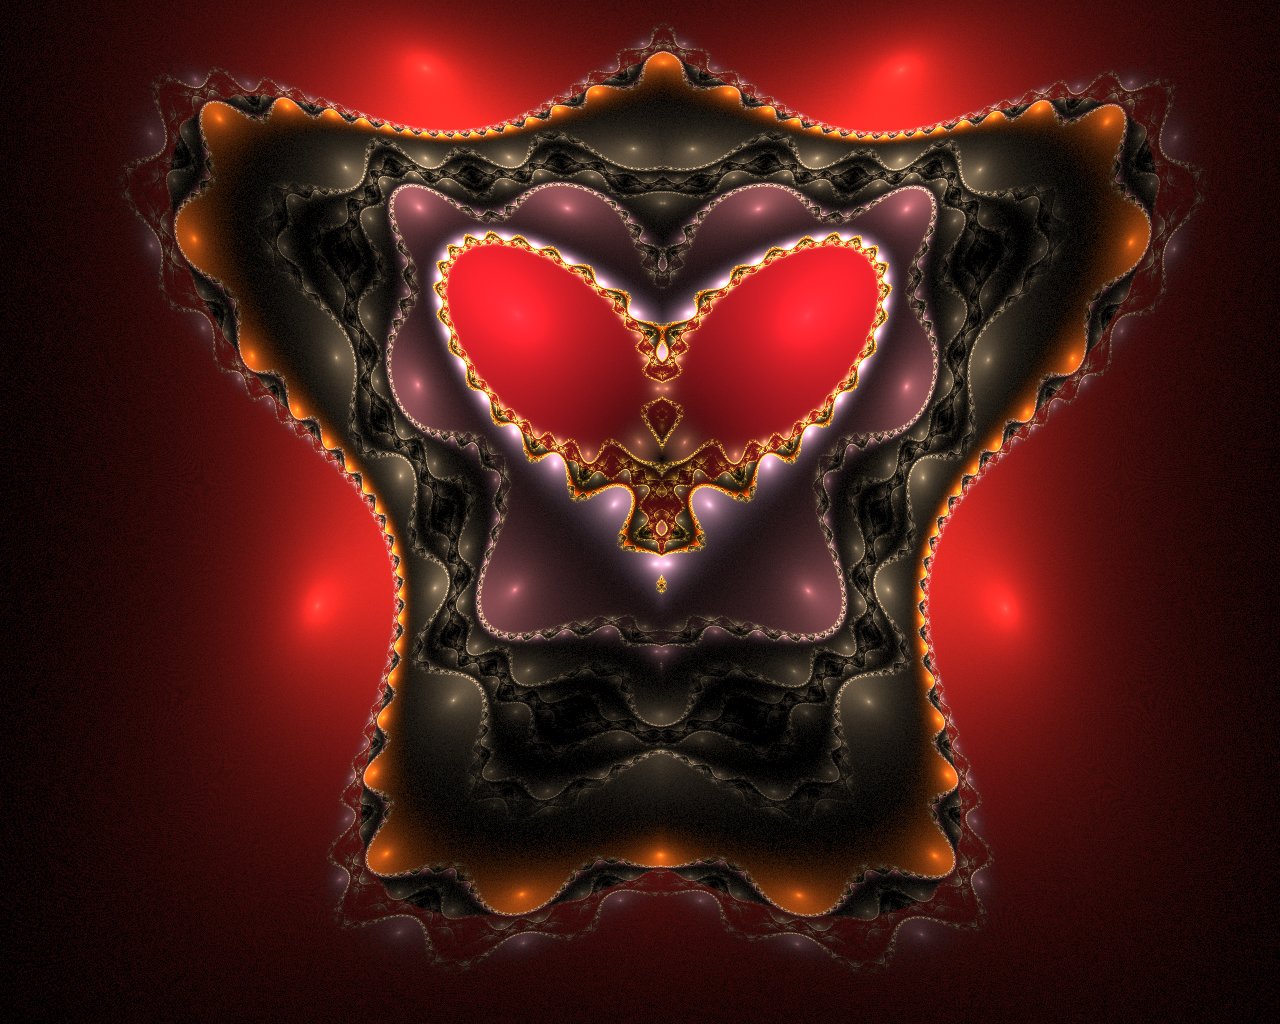 45+] Queen of Hearts Wallpaper - WallpaperSafari